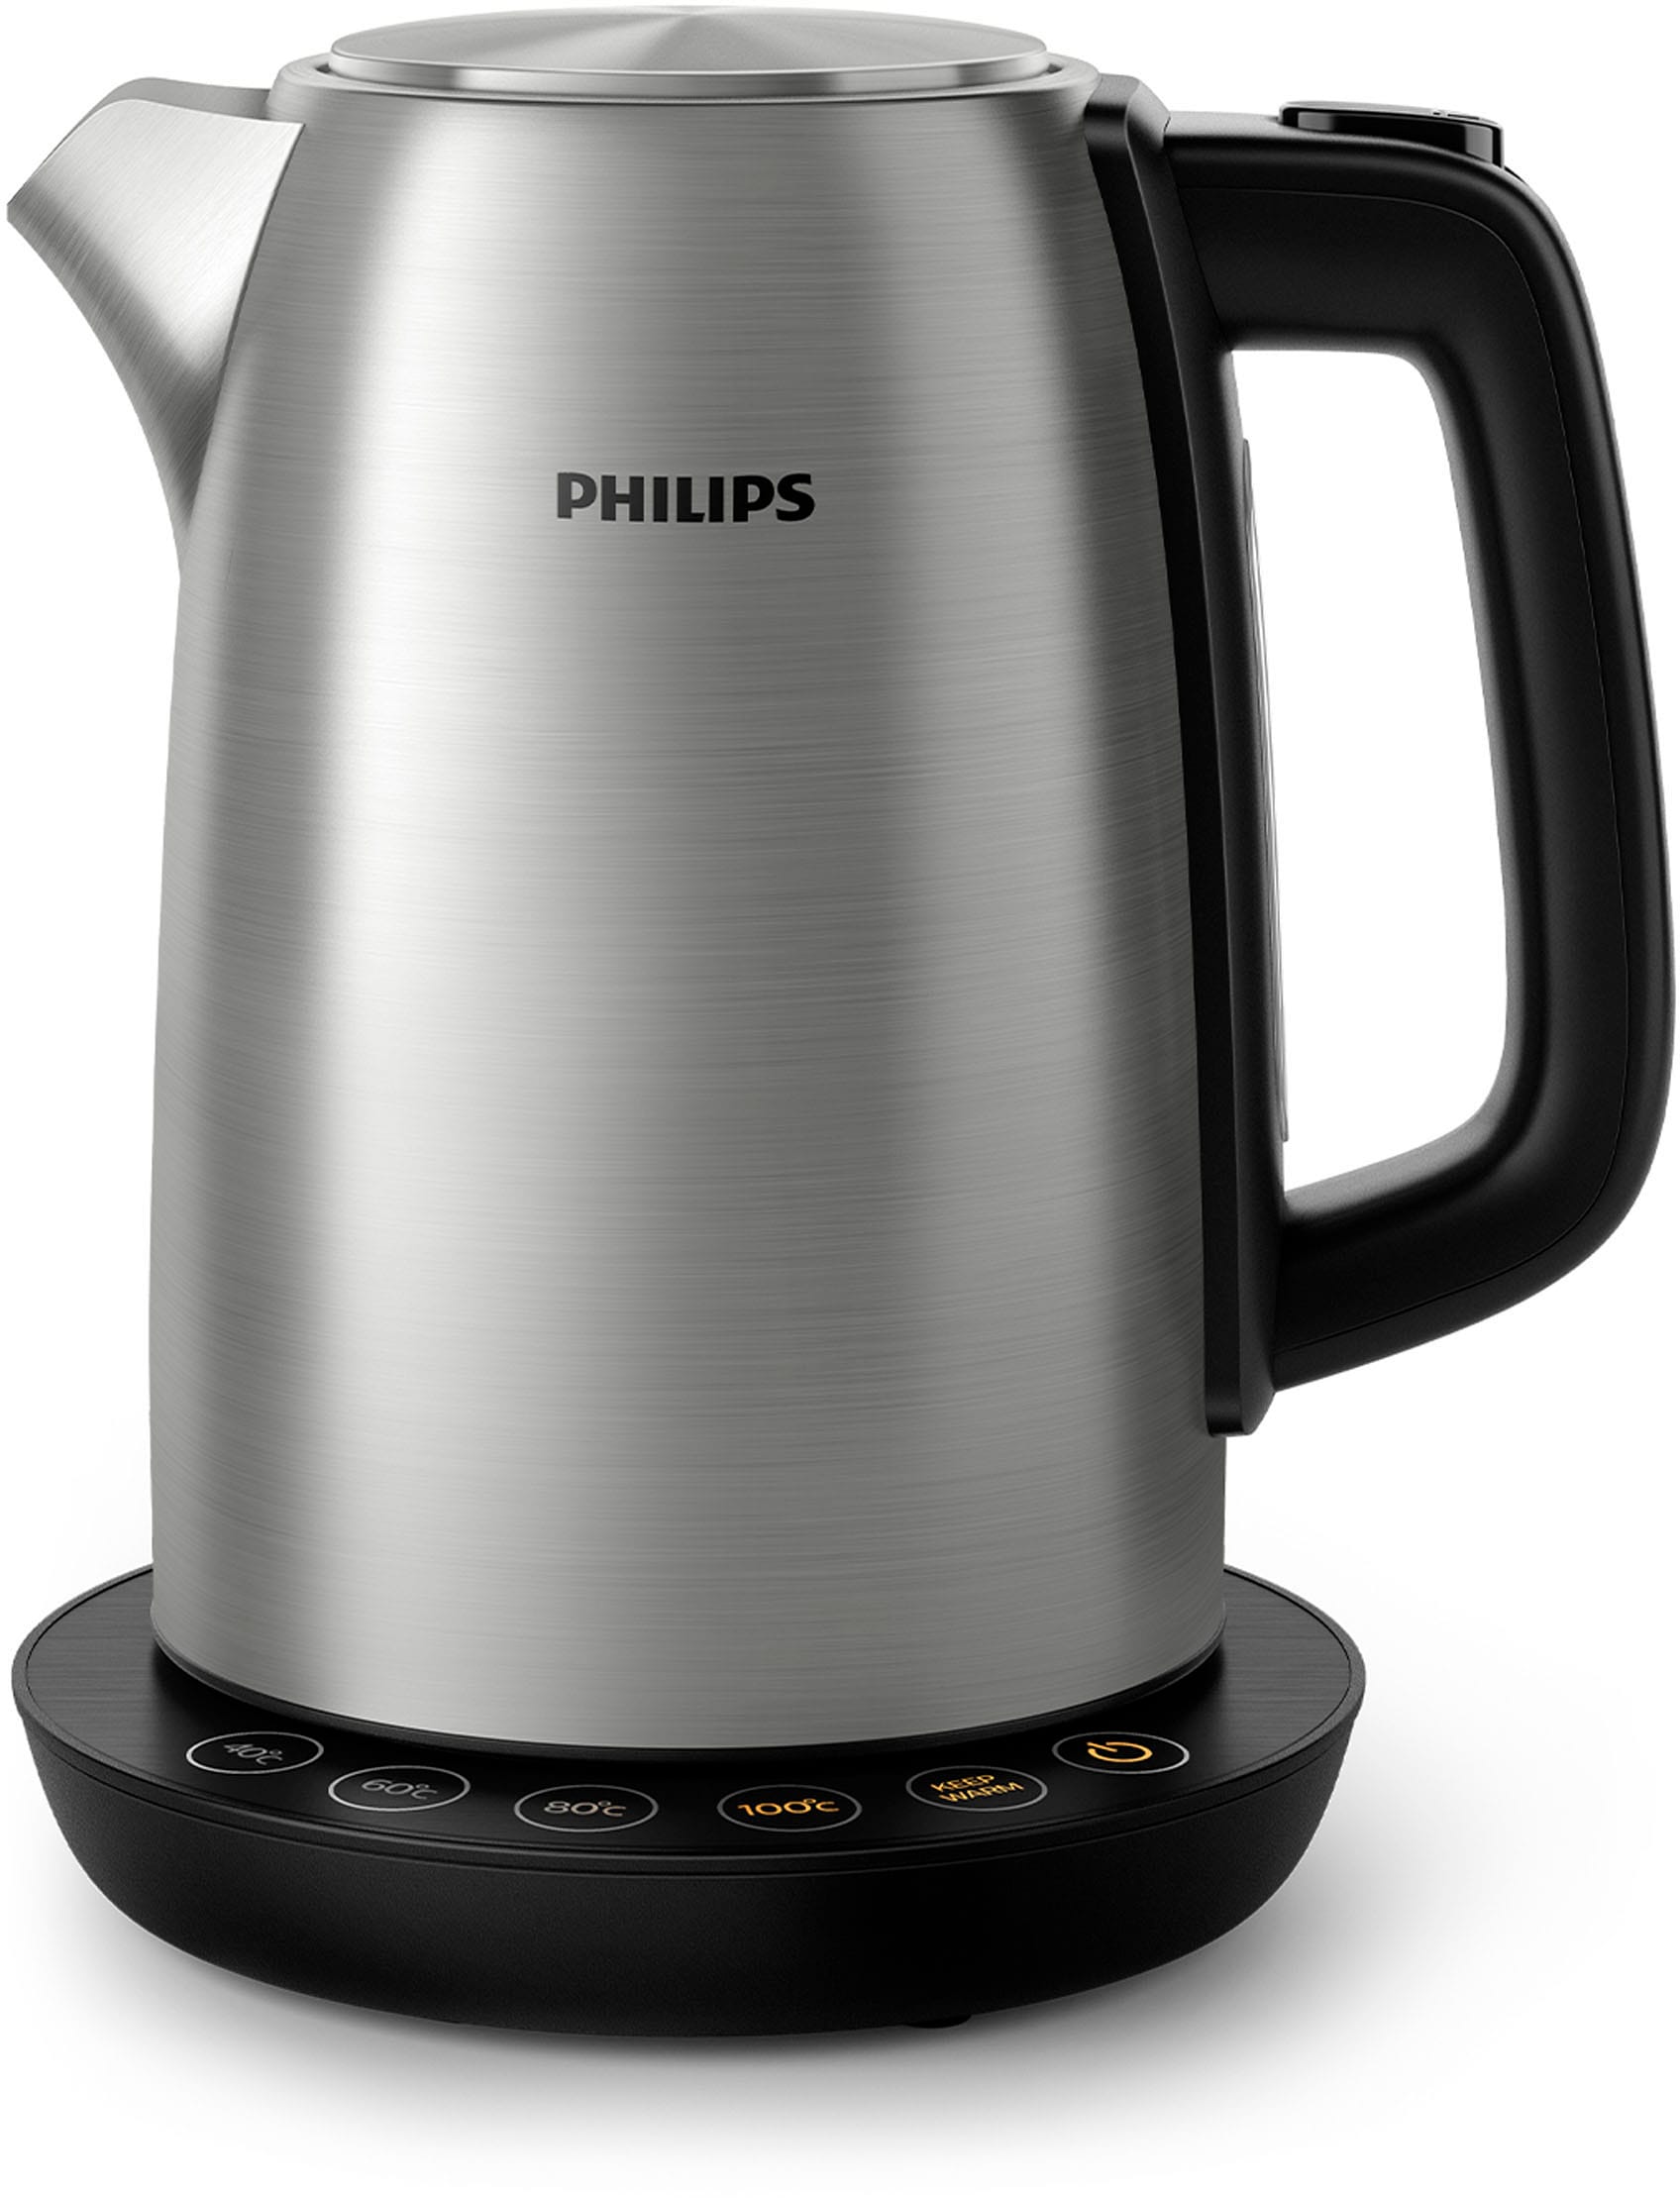 Liter, Watt Raten Wasserkocher, 2200 1,7 Philips HD9359/90, auf kaufen